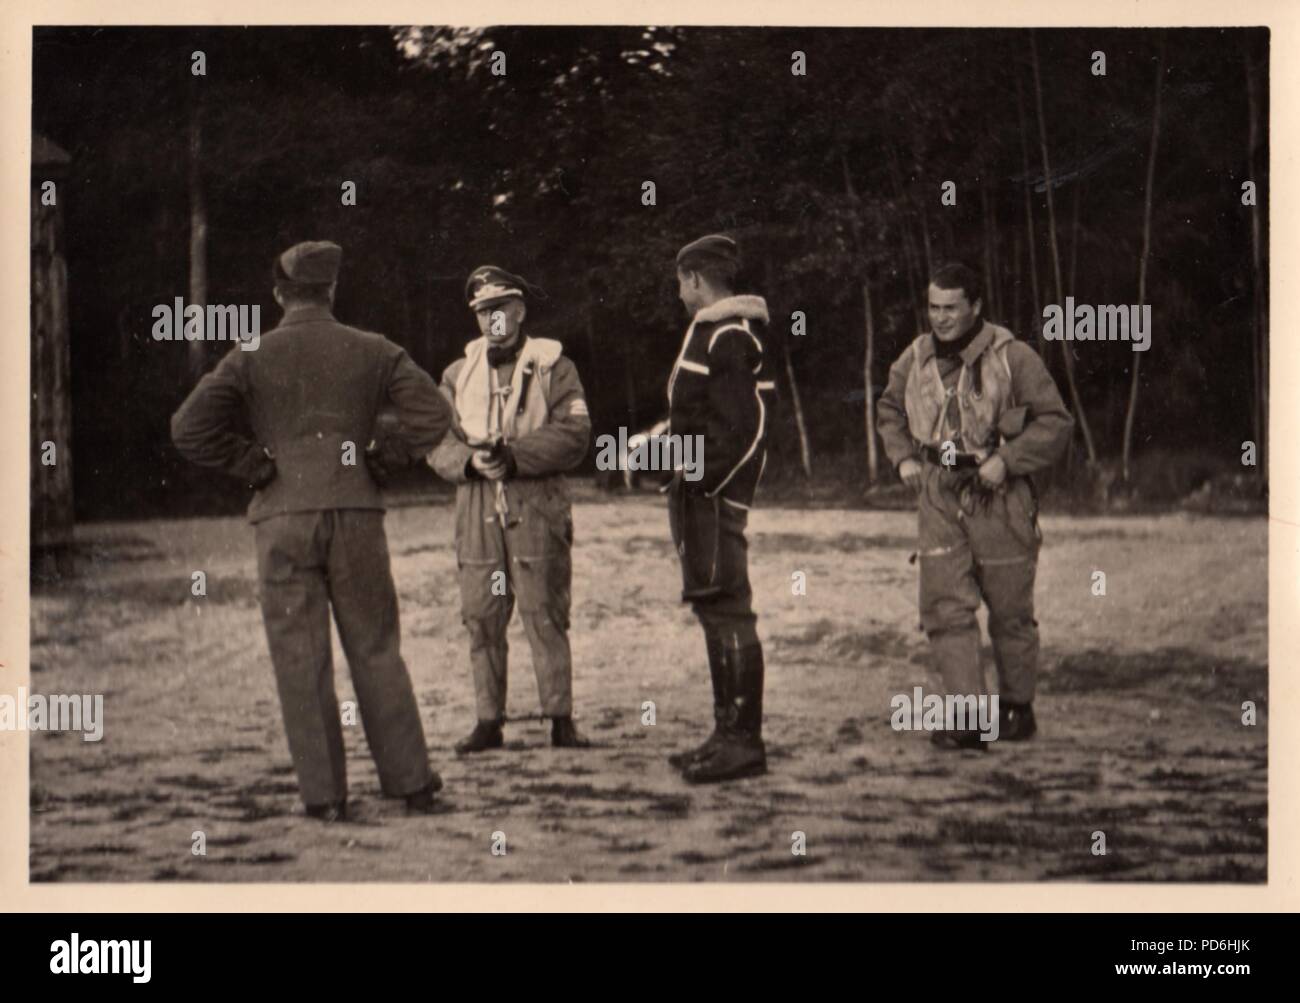 Droit de l'album photo de l'Oberleutnant Oscar Müller de la Kampfgeschwader 1 : l'Oberleutnant Karl Heinz Müncheberg (deuxième à gauche) et l'Oberleutnant Oscar Müller (au centre), portant une veste RAF 'capturé' à Dunkerque, avec Ali Petzenhauser (droite). Müncheberg était Staffelkapitän du 5./KG 1 à partir de novembre 1941 jusqu'à ce qu'il a été abattu par des tirs antiaériens et tués le 17 décembre 1941. Banque D'Images